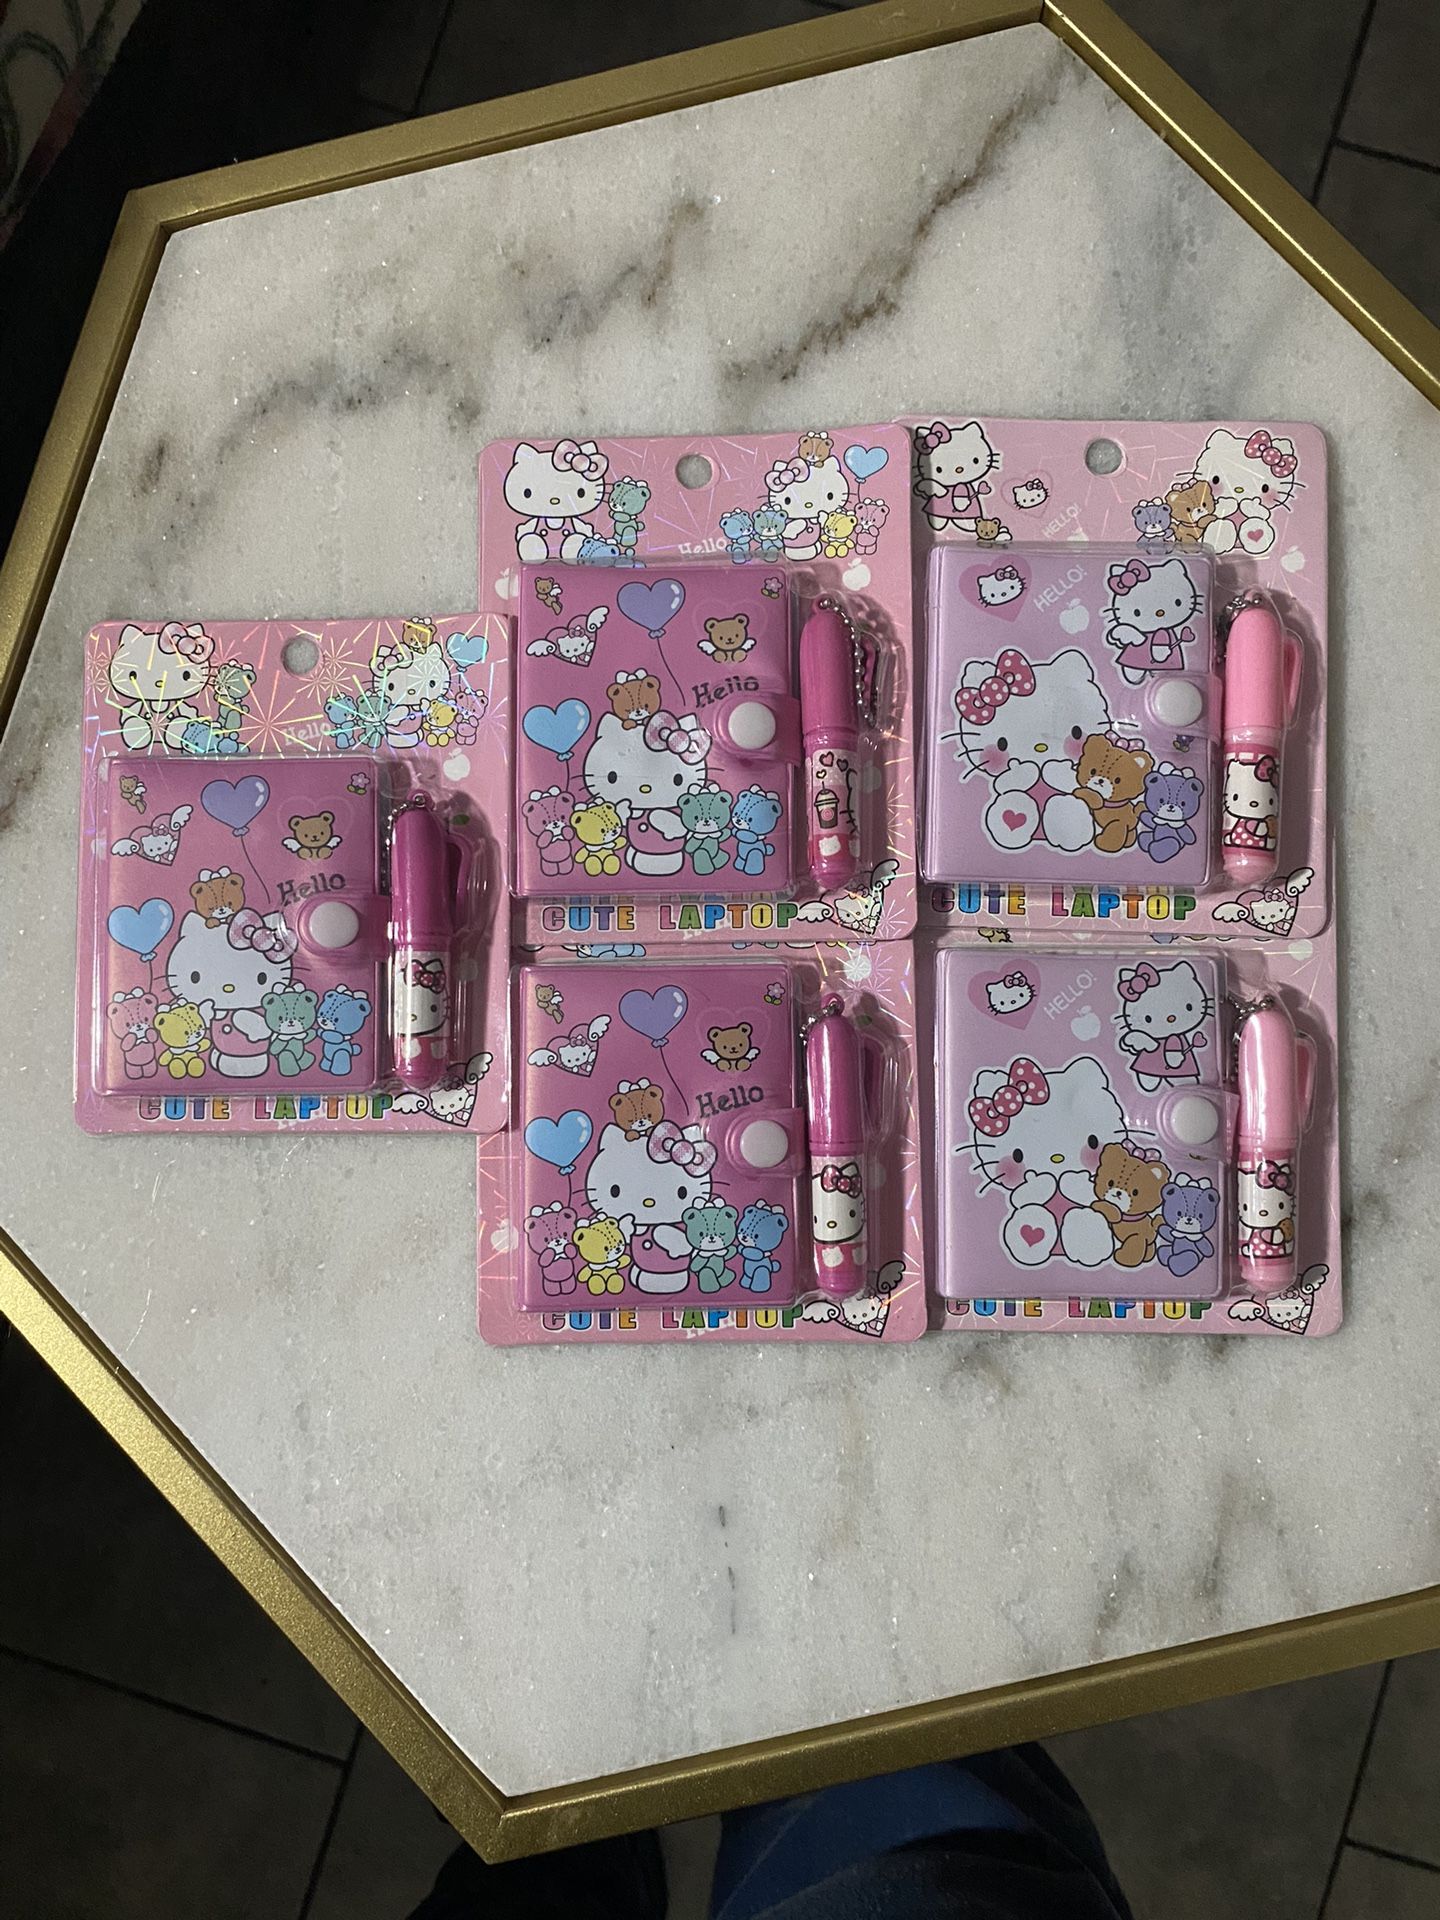 $3 Each Hello Kitty Mini Notebook W/ Pen🔥